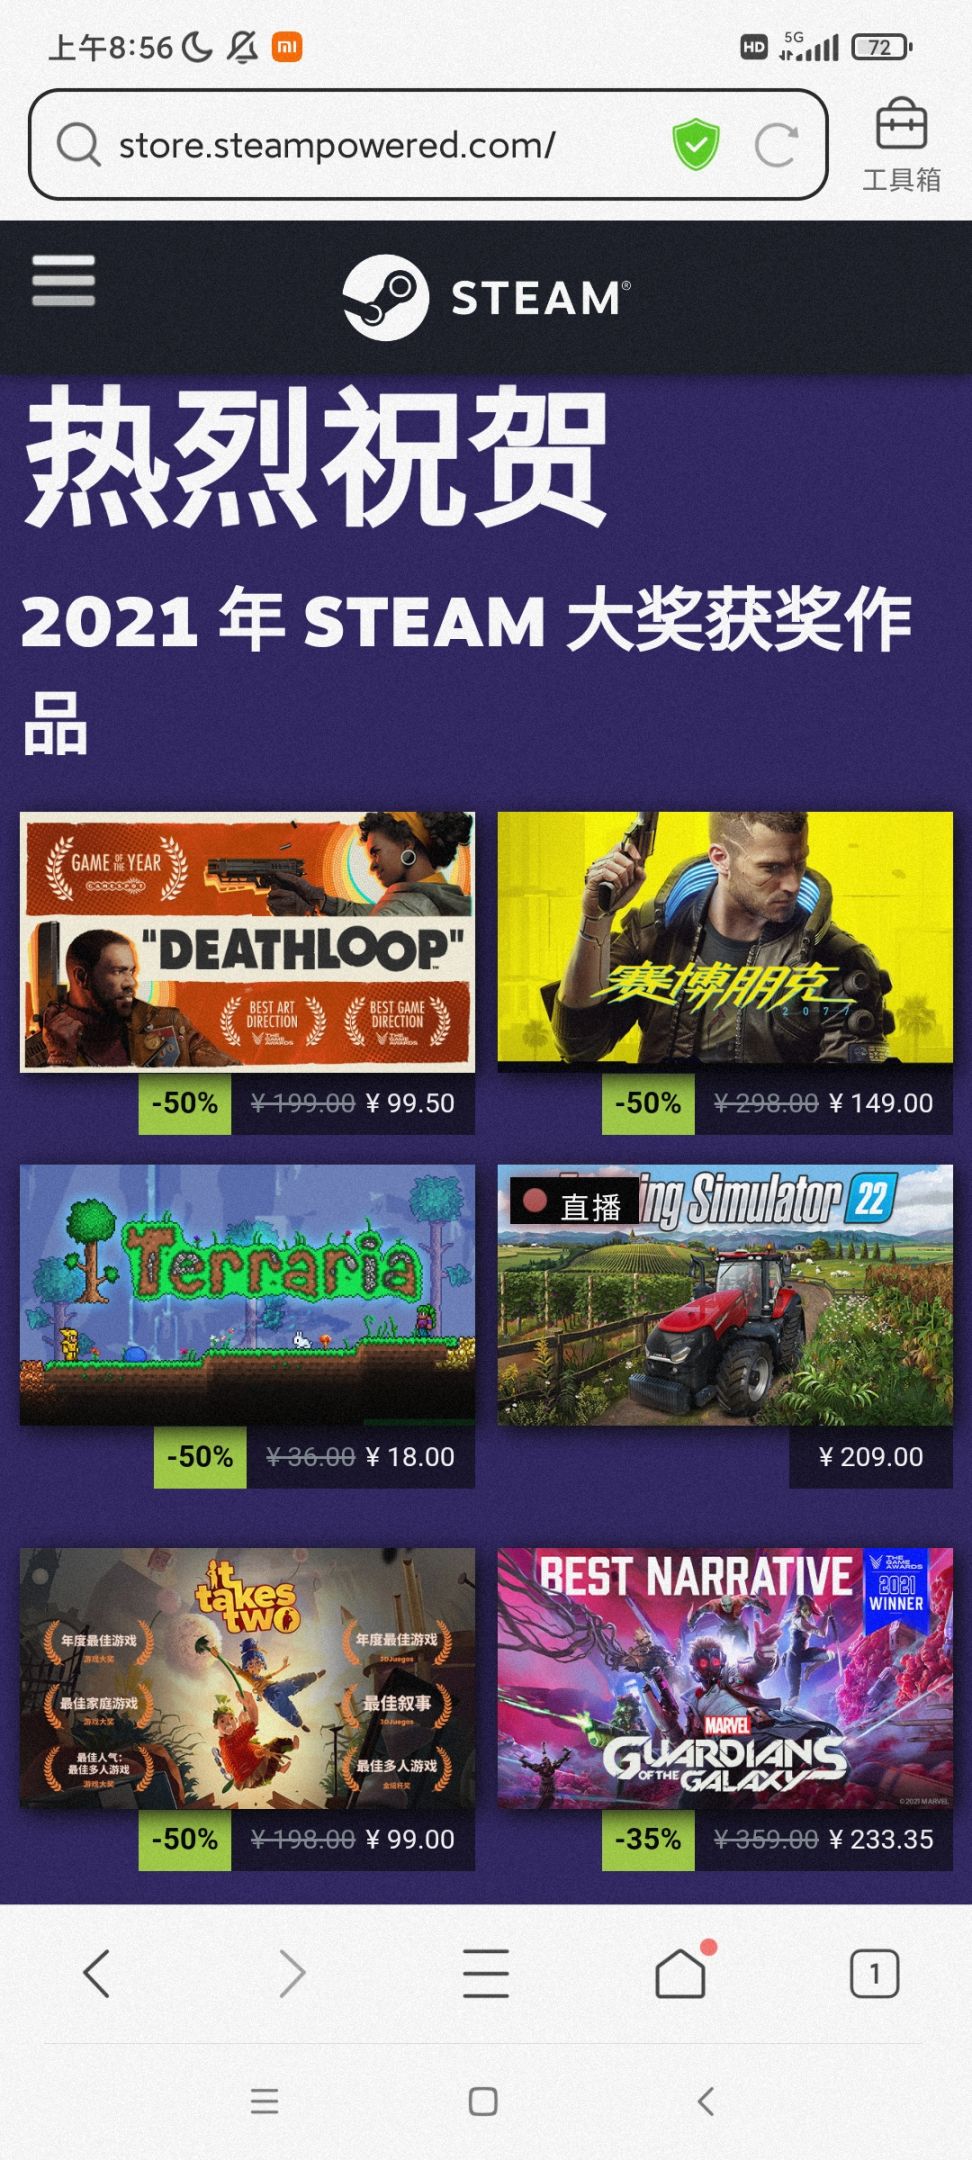 【PC游戏】steam大奖获奖游戏-第0张